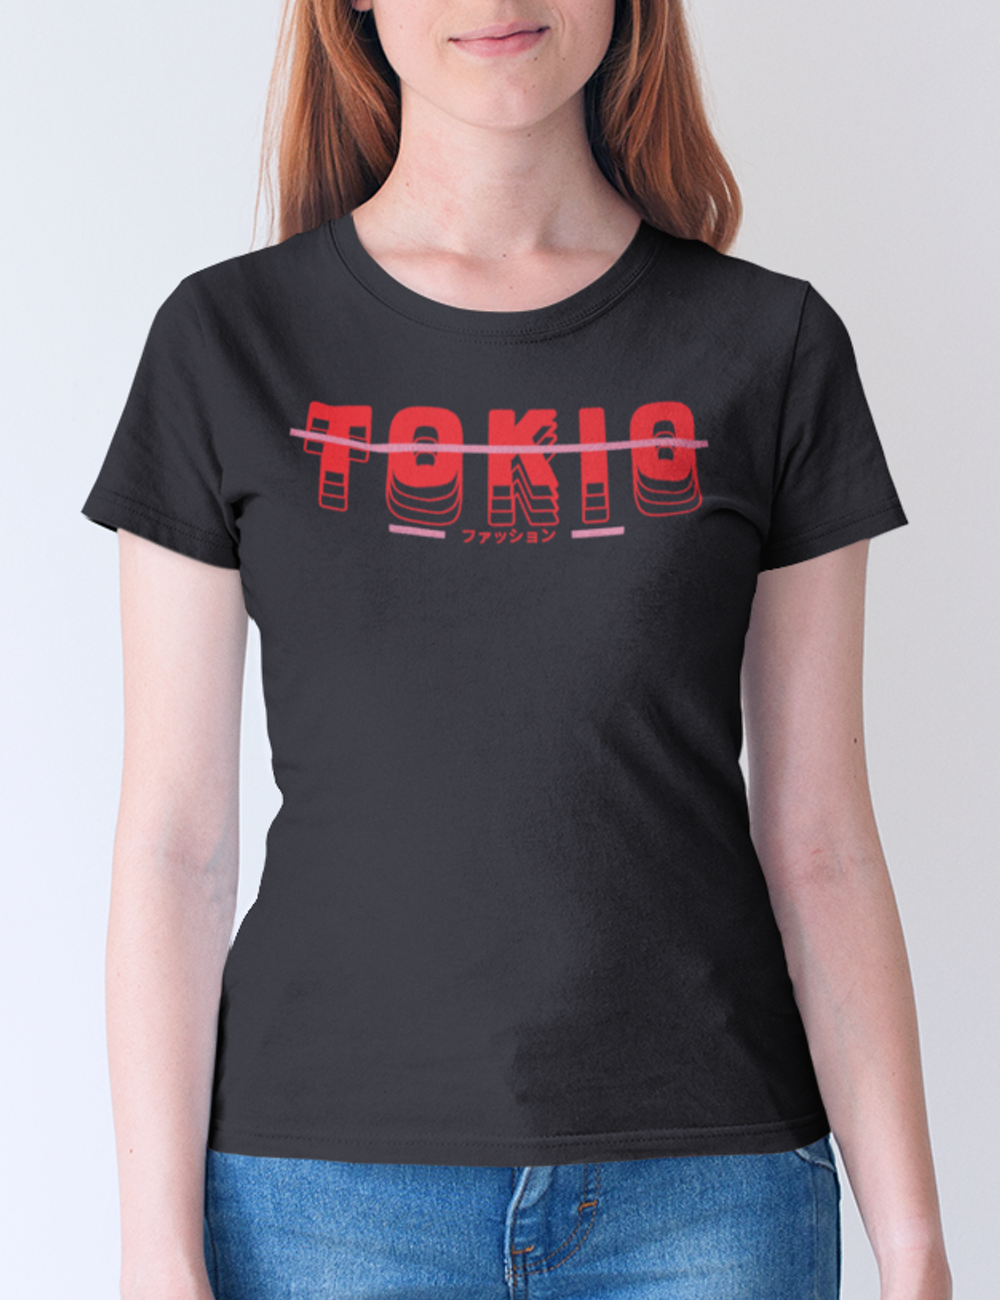 Tokio | Women's Fitted T-Shirt OniTakai